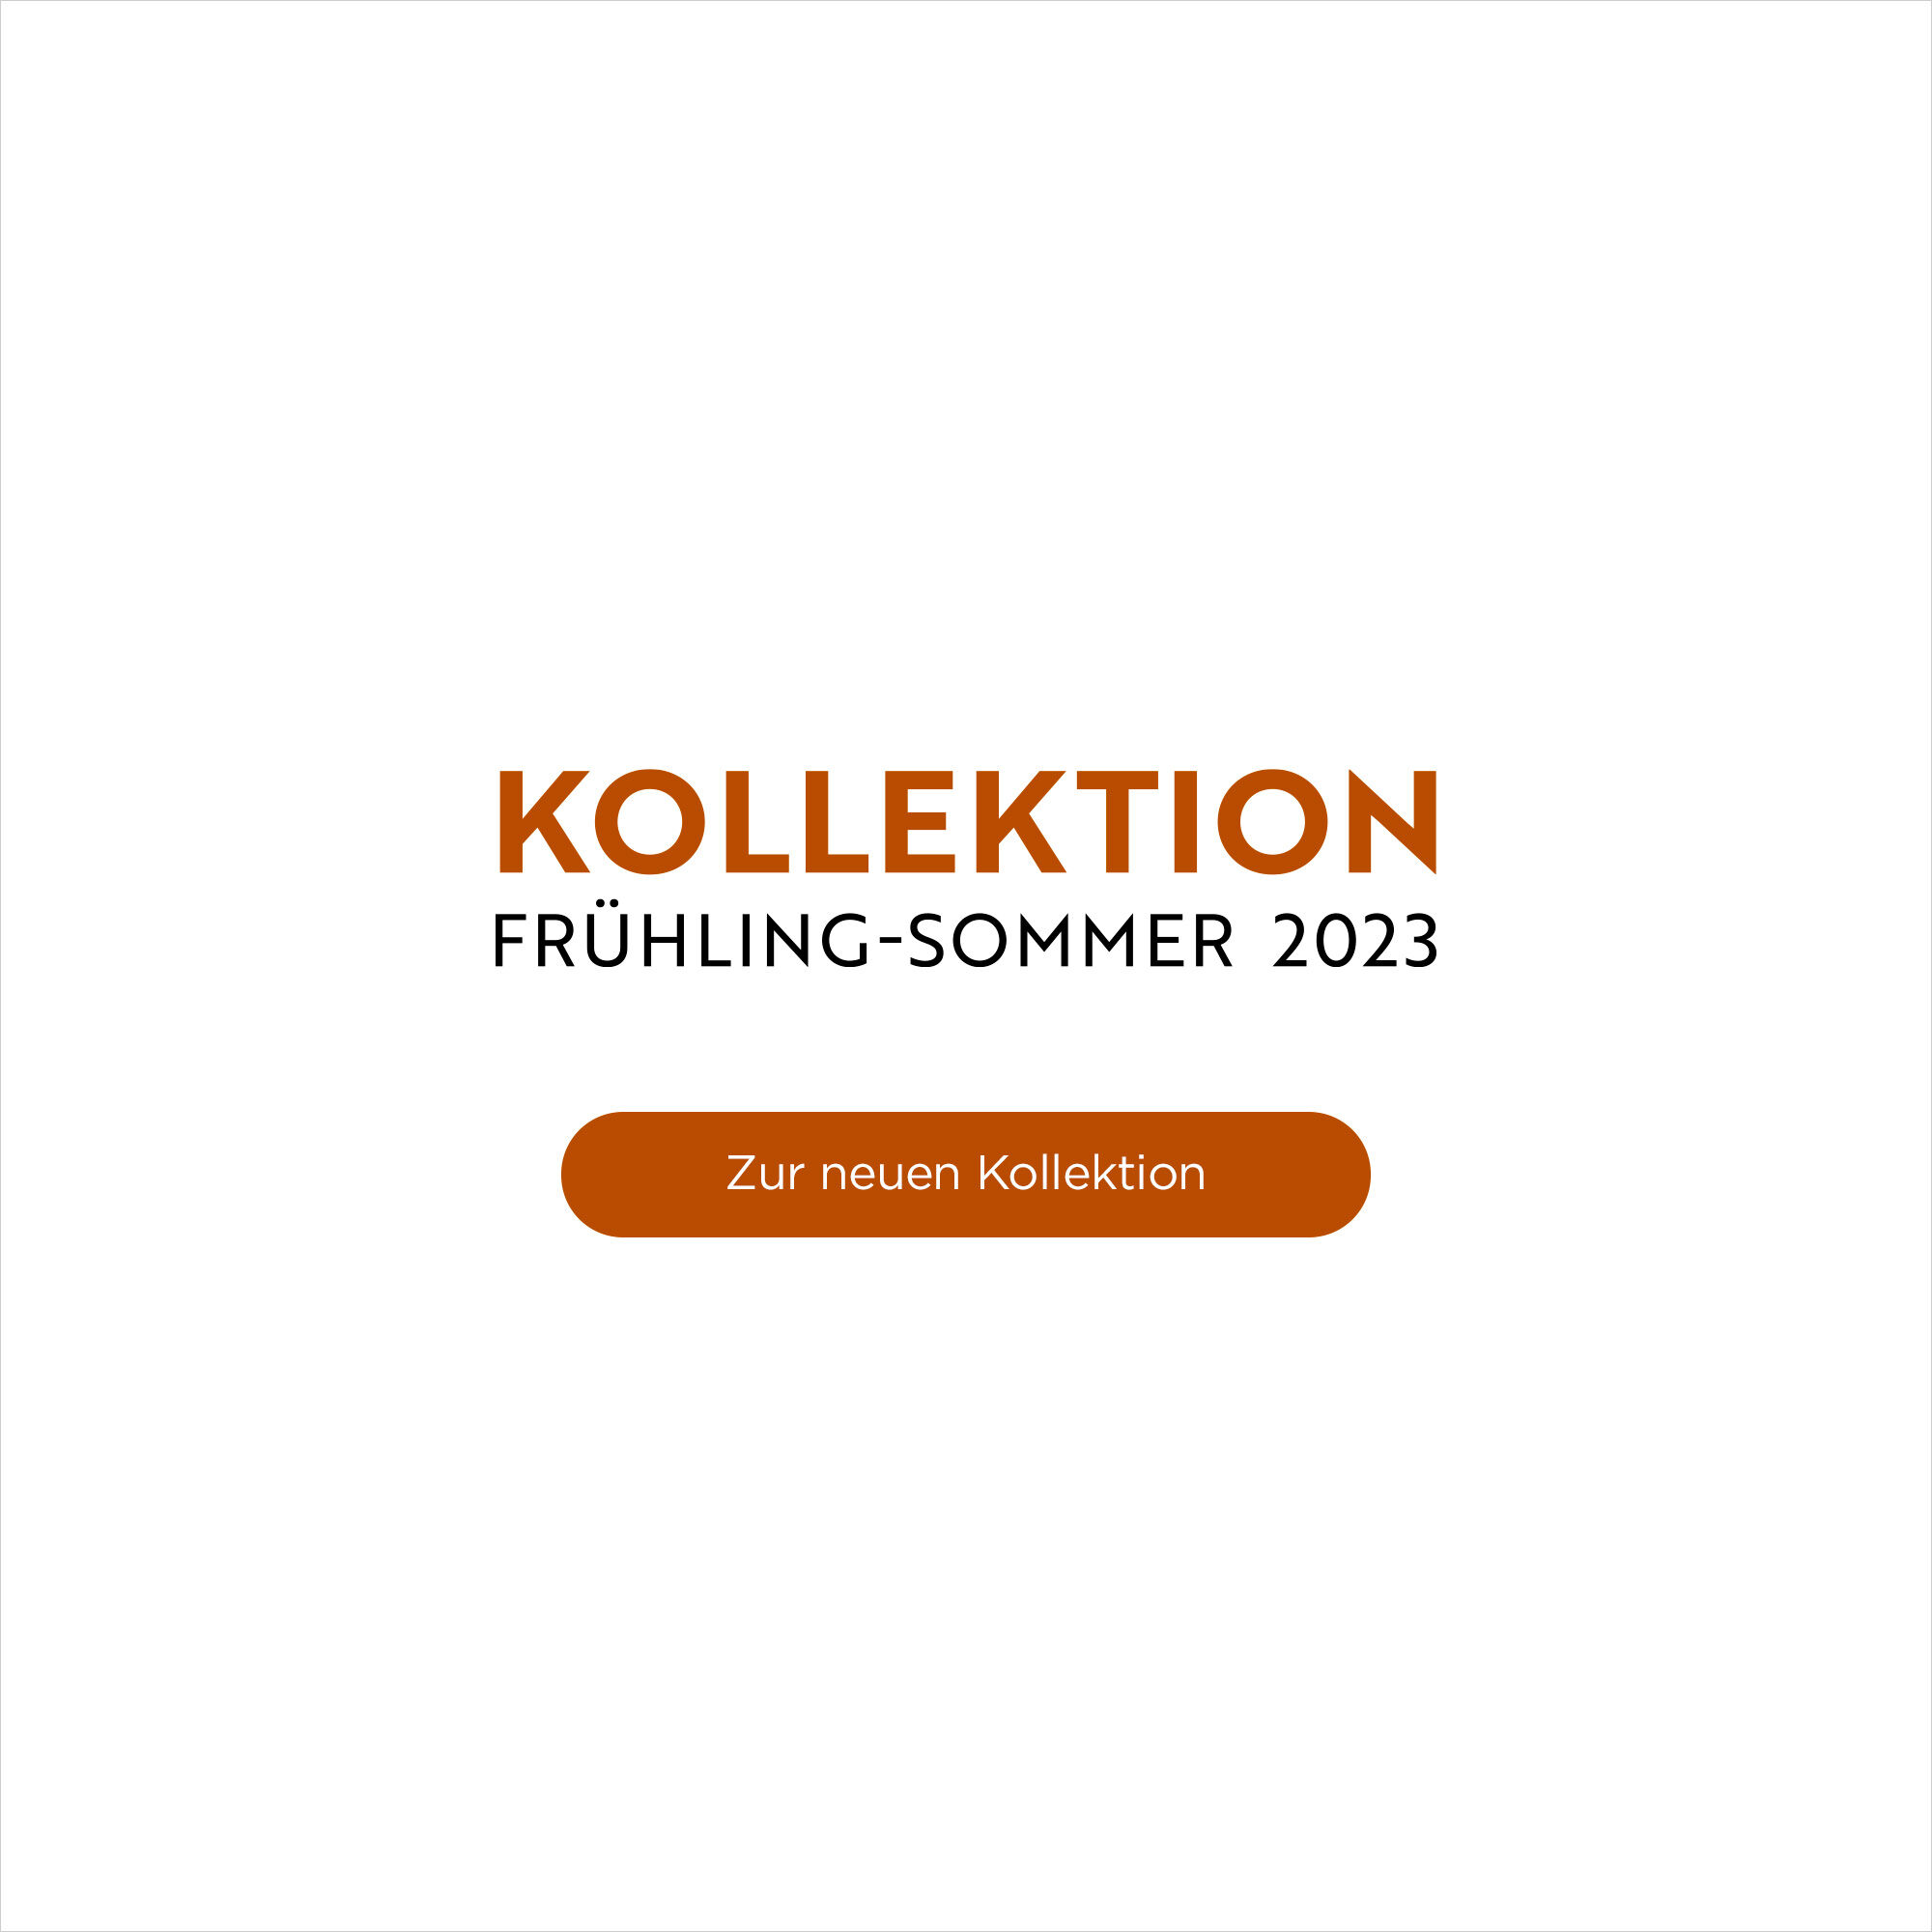 Kollektion Frühling-Sommer 2023